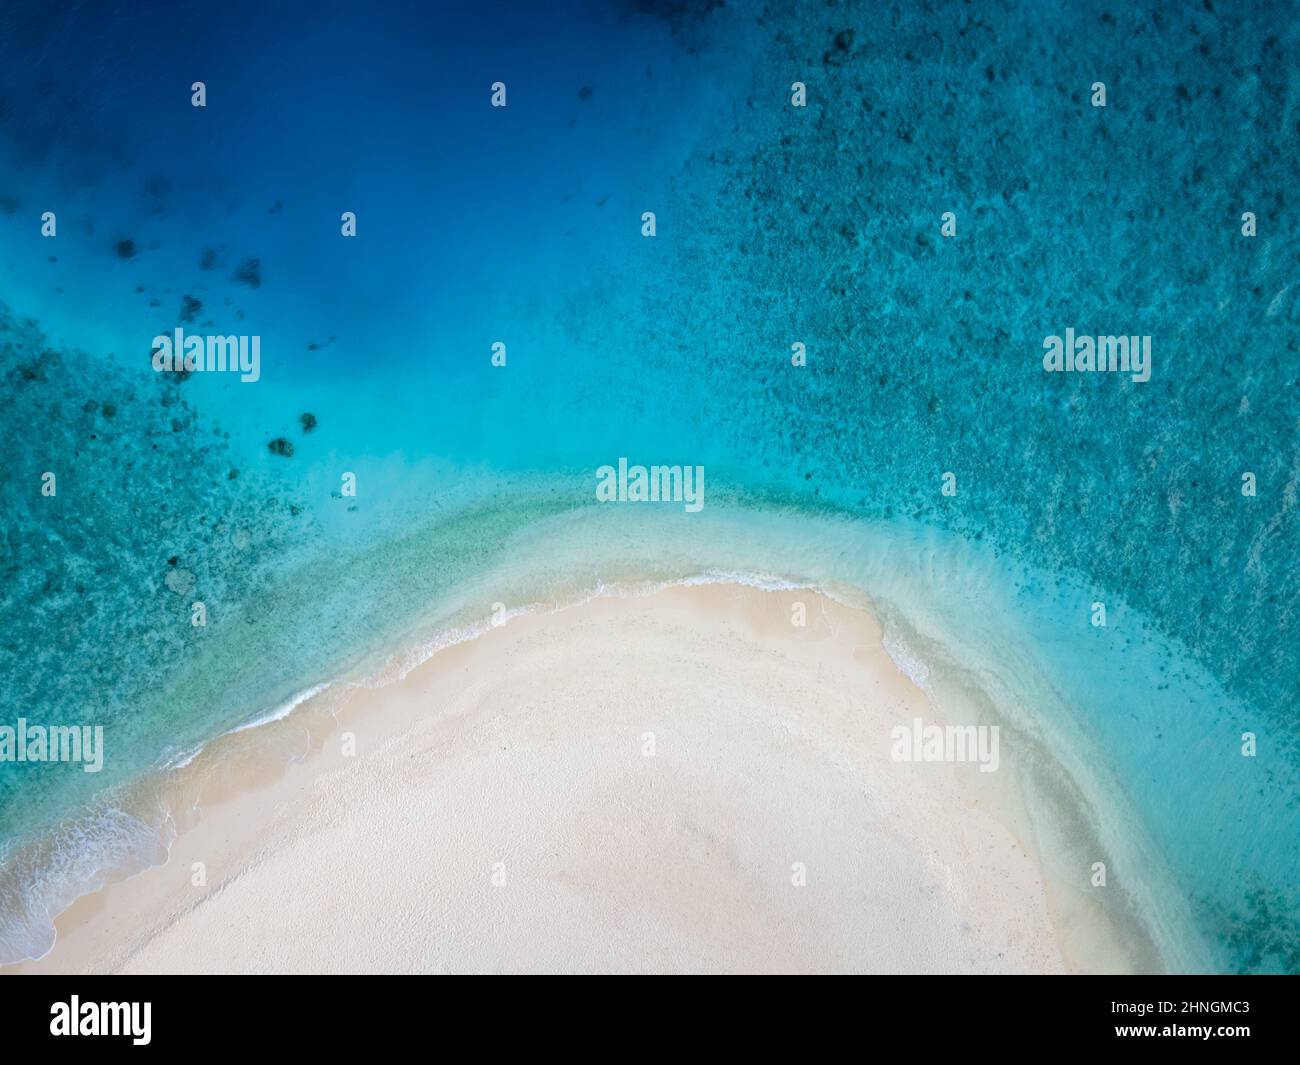 Plage parfaite pour des vacances avec sable blanc et bleu turquoise transparent. Vue aérienne du haut vers le bas depuis le drone. Une île tropicale immaculée Banque D'Images